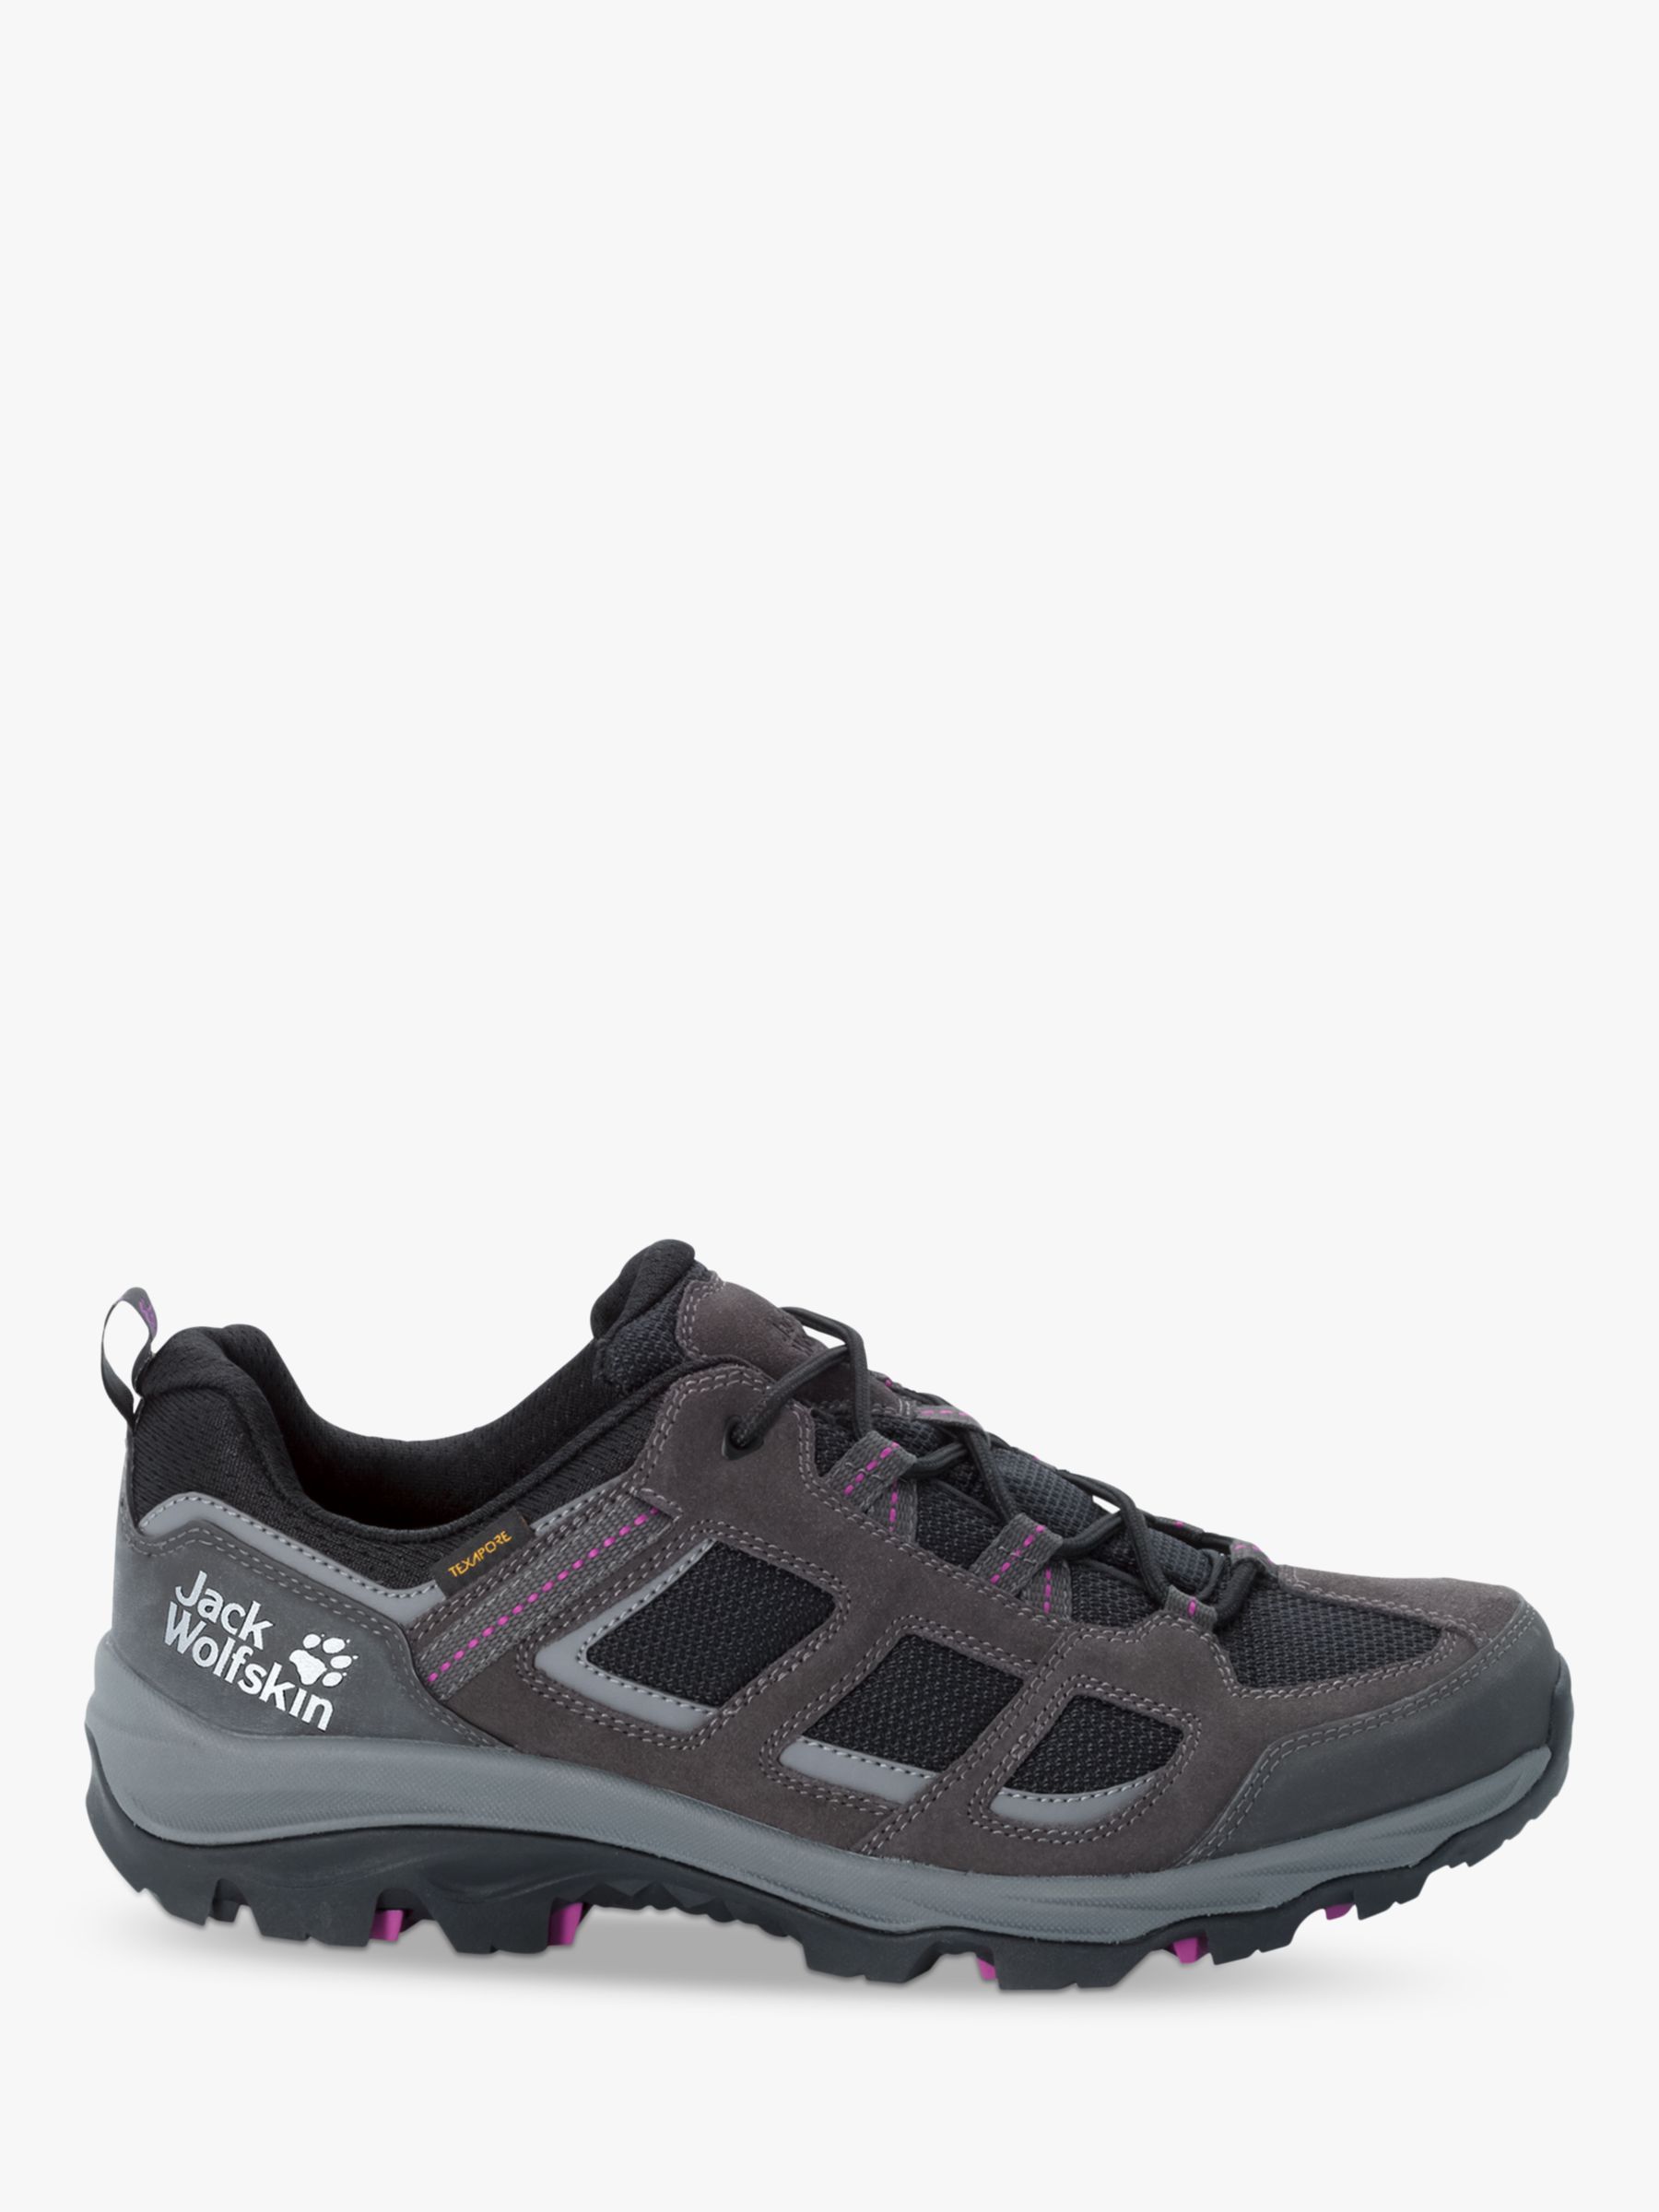 Jack Wolfskin Vojo 3 Texapore Women's Waterproof Walking Shoes